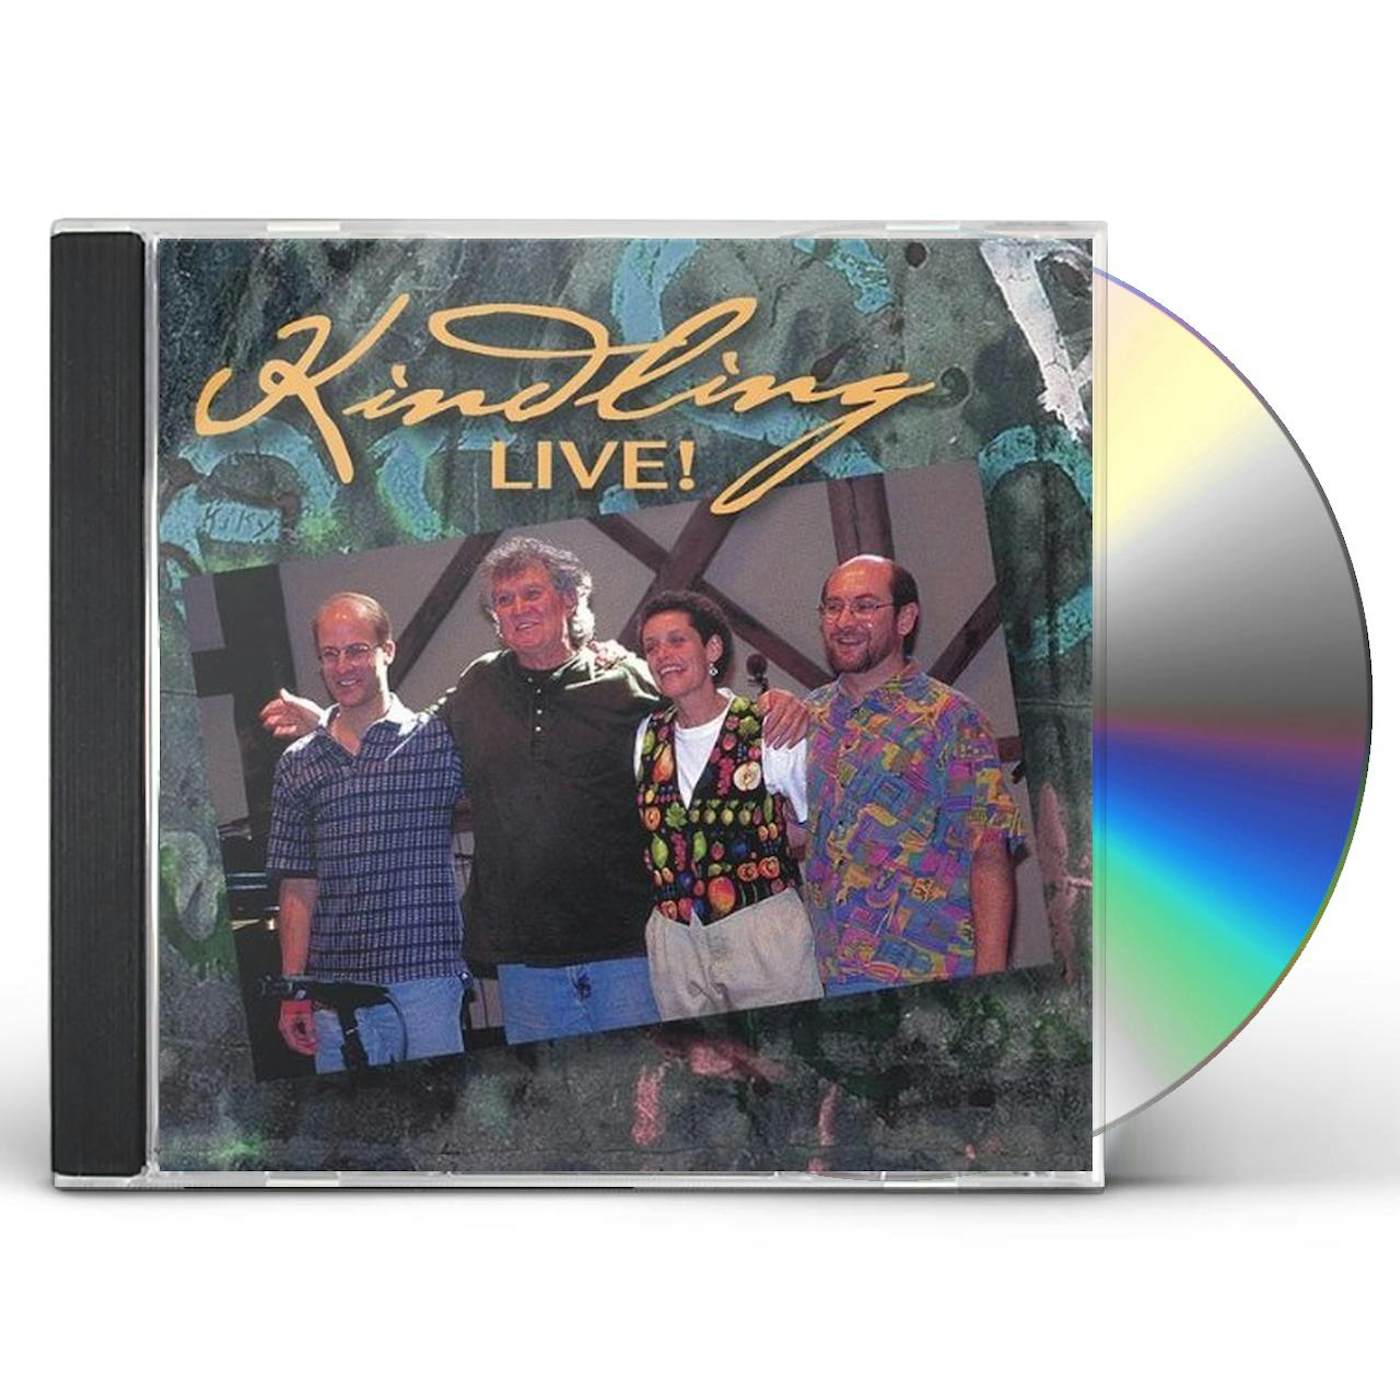 KINDLING LIVE! CD